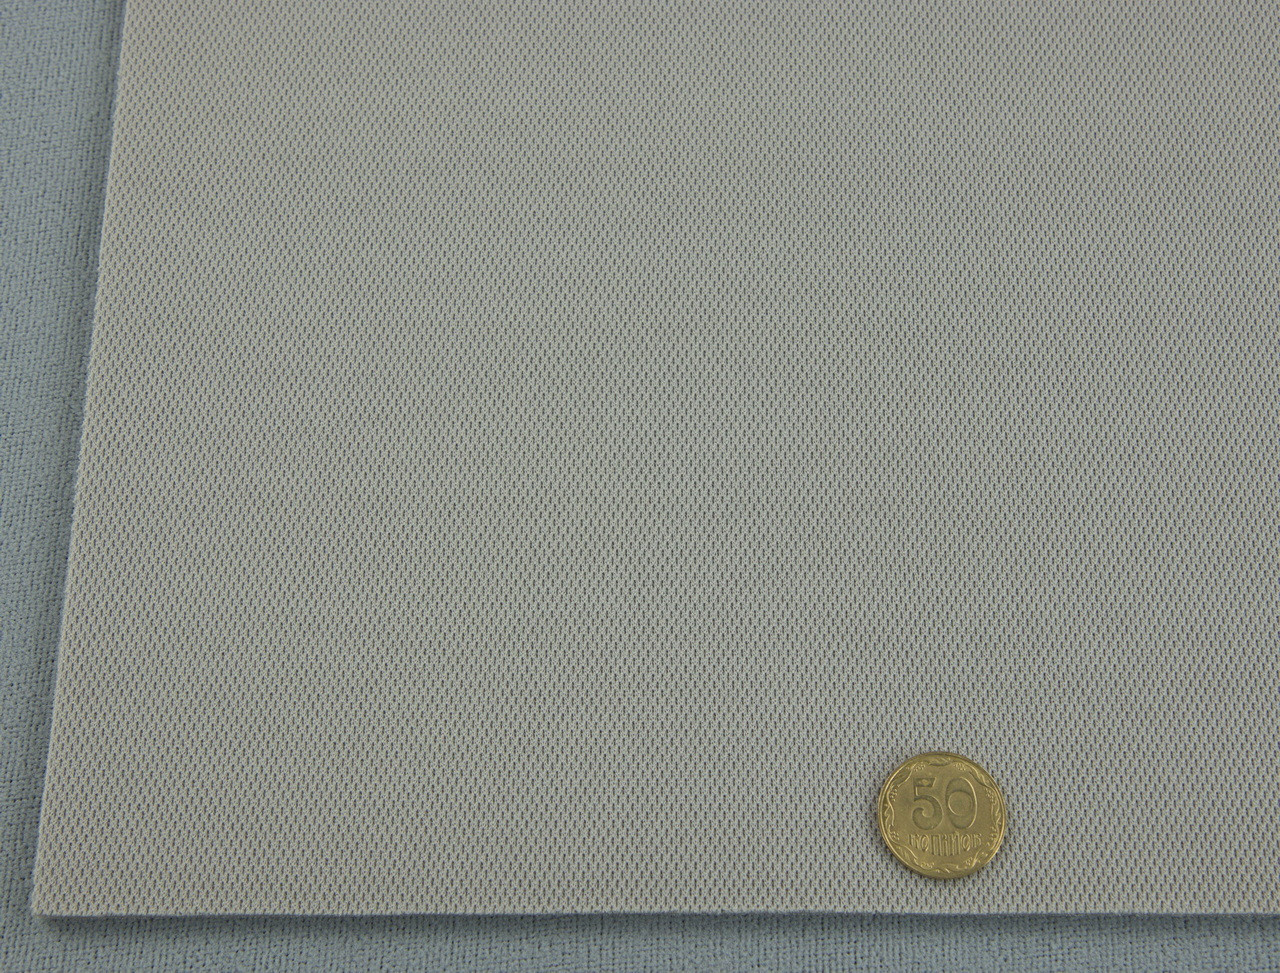 Автоткань потолочная Puntos P-84, цвет серый, на поролоне, толщина 4мм, ширина 170см, Турция детальная фотка